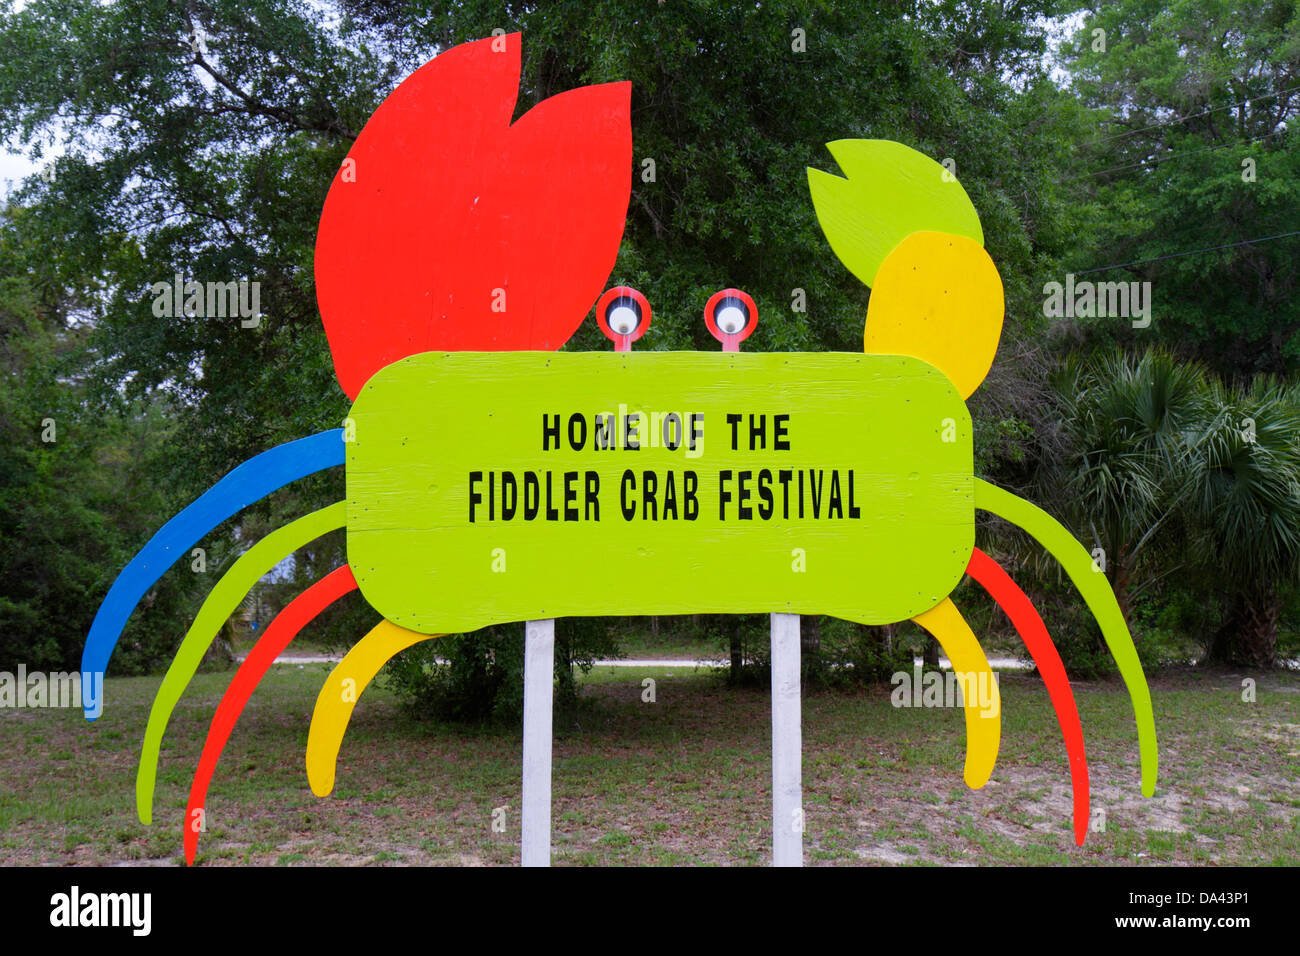 Florida Steinhatchee,panneau,logo,Fiddler Crab Festival,humour,humour,humour,visiteurs voyage touristique touristique touristique site touristique monuments culture culturelle Banque D'Images